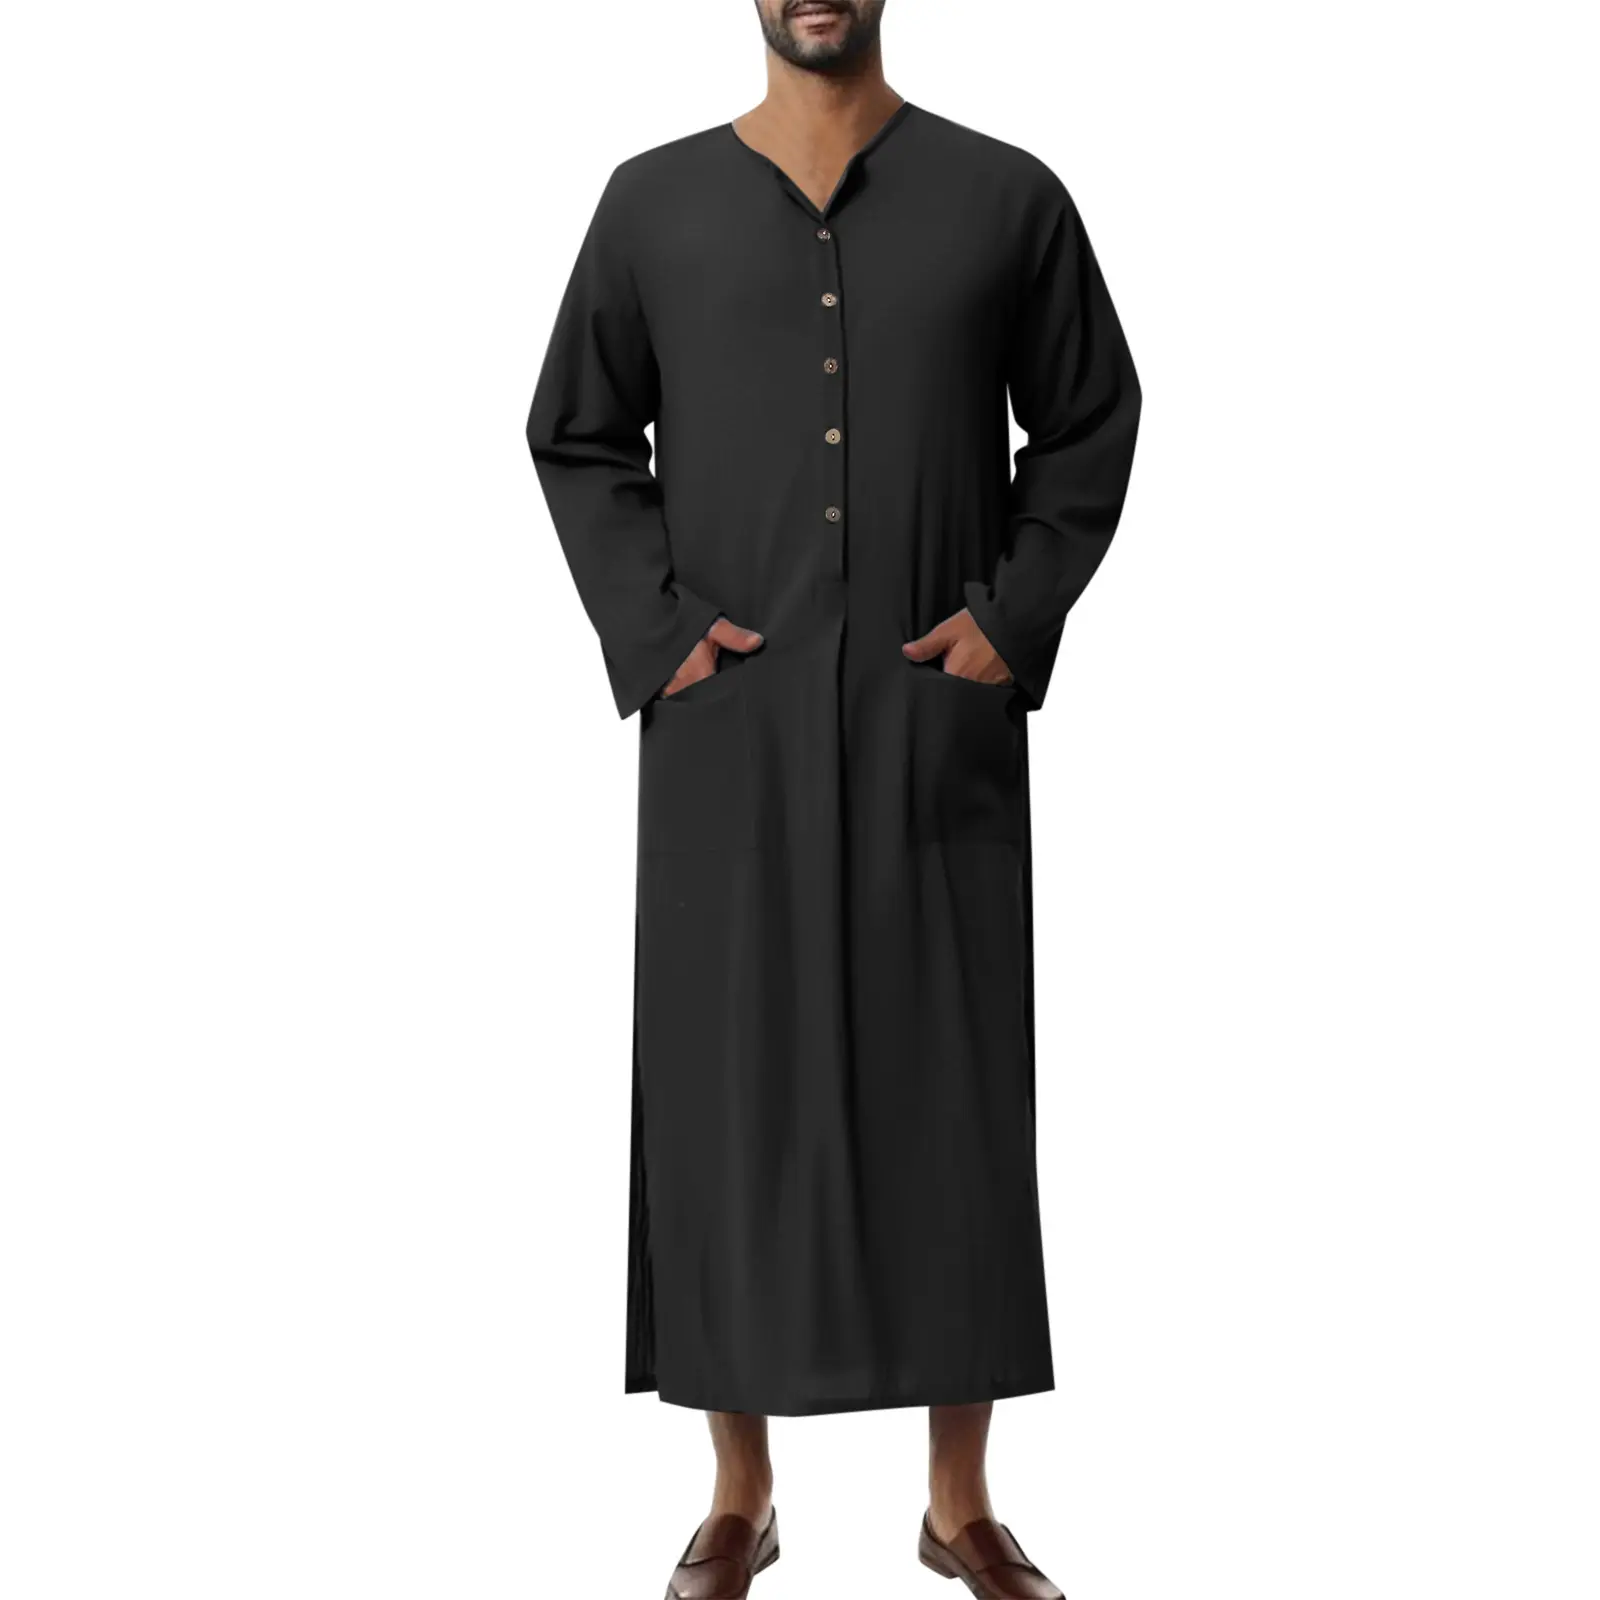 ชุดเดรสอาบายาอิสลามแขนยาวสไตล์อาหรับสำหรับผู้ชายชุดเดรสอาหรับออกแบบได้ตามต้องการ